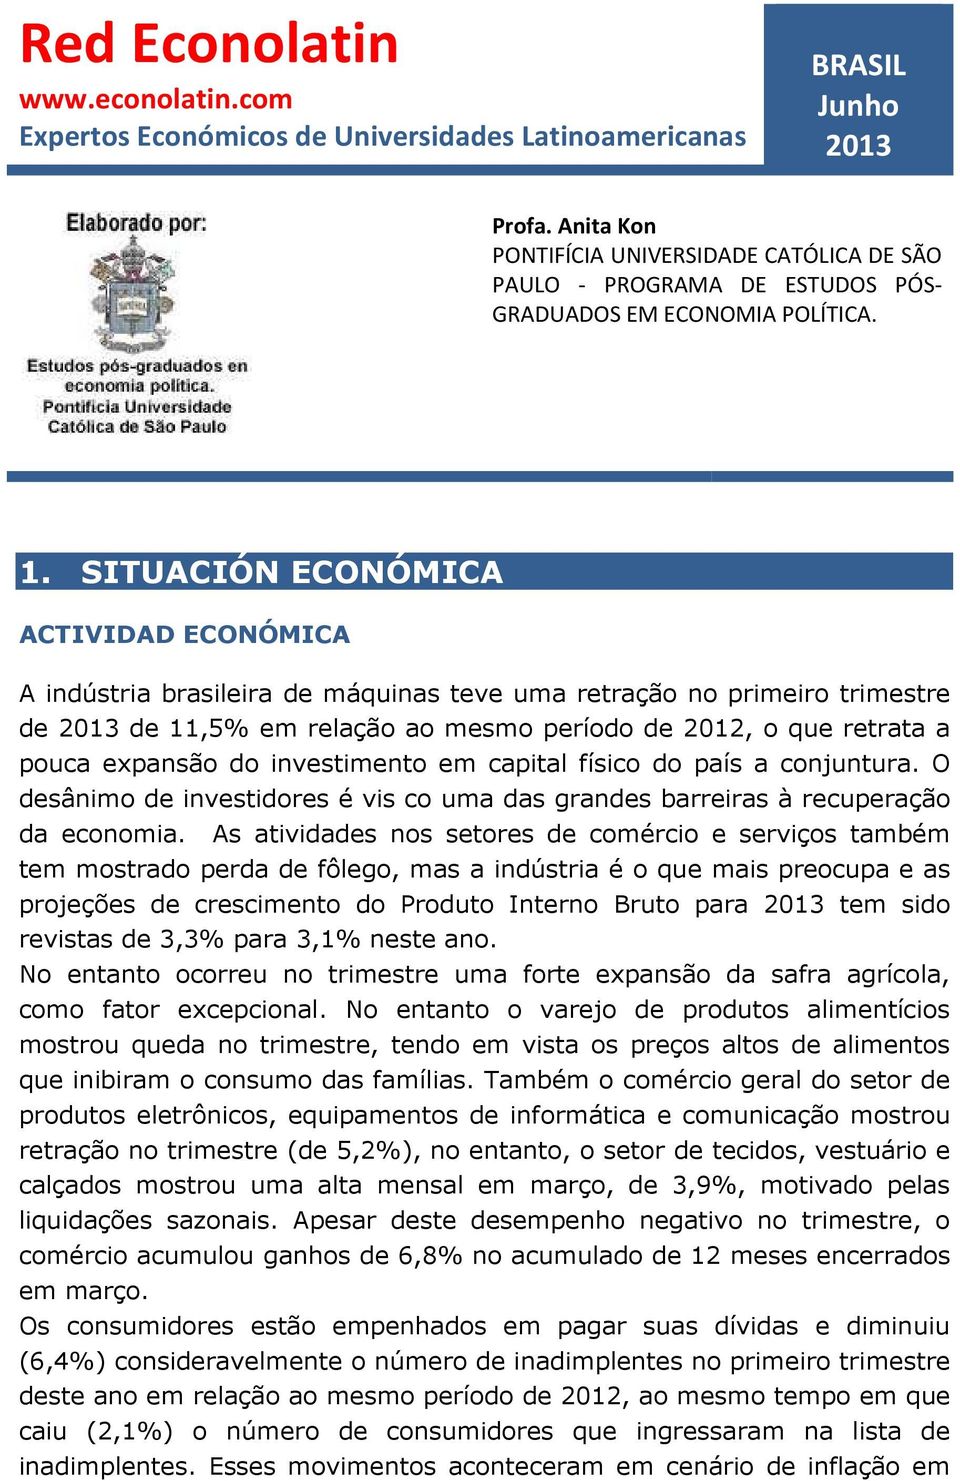 SITUACIÓN ECONÓMICA ACTIVIDAD ECONÓMICA A indústria brasileira de máquinas teve uma retração no primeiro trimestre de 2013 de 11,5% em relação ao mesmo período de 2012, o que retrata a pouca expansão